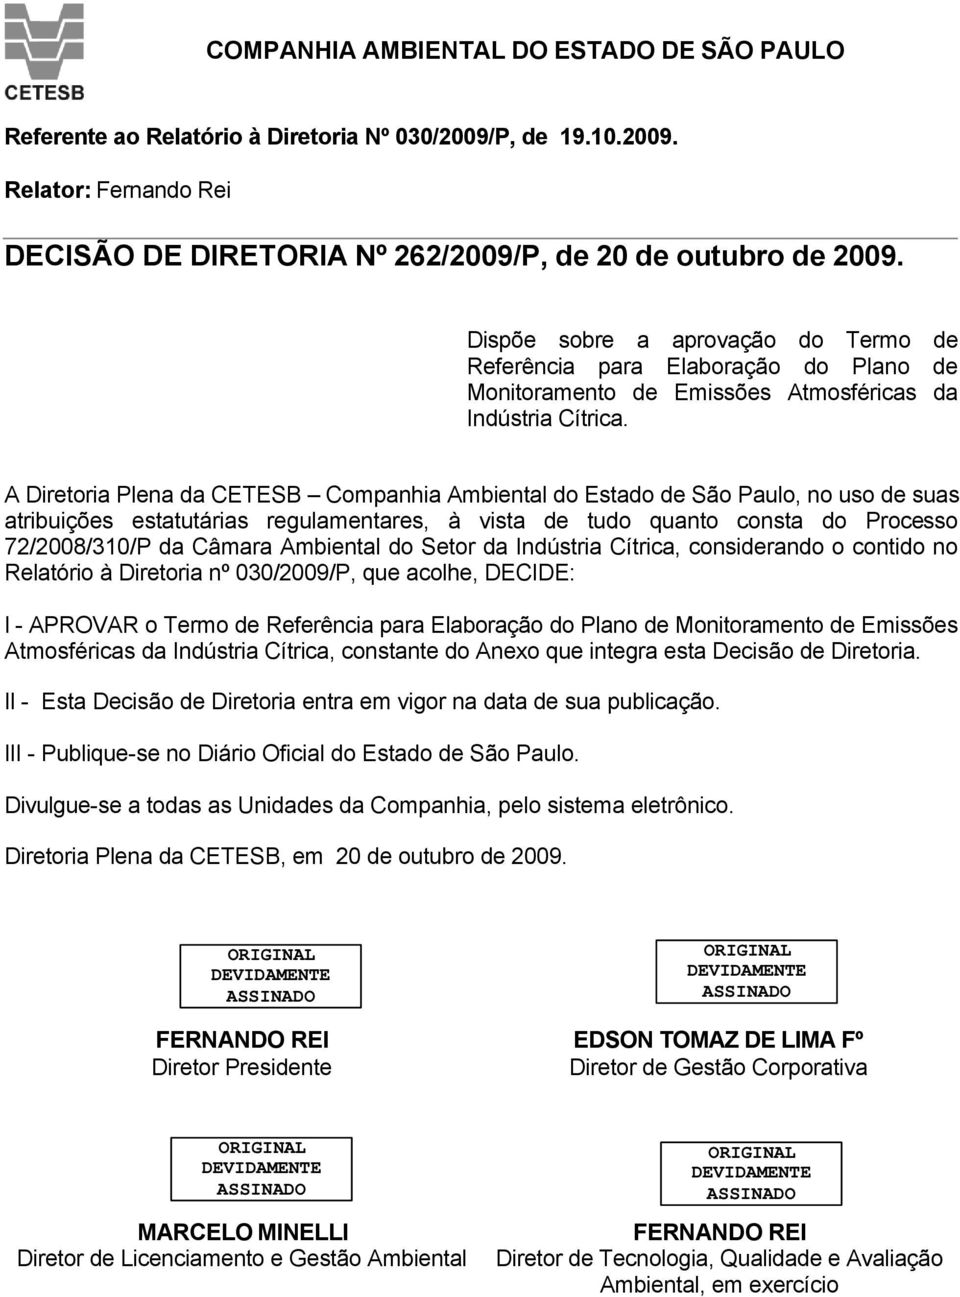 A Diretoria Plena da CETESB Companhia Ambiental do Estado de São Paulo, no uso de suas atribuições estatutárias regulamentares, à vista de tudo quanto consta do Processo 72/2008/310/P da Câmara